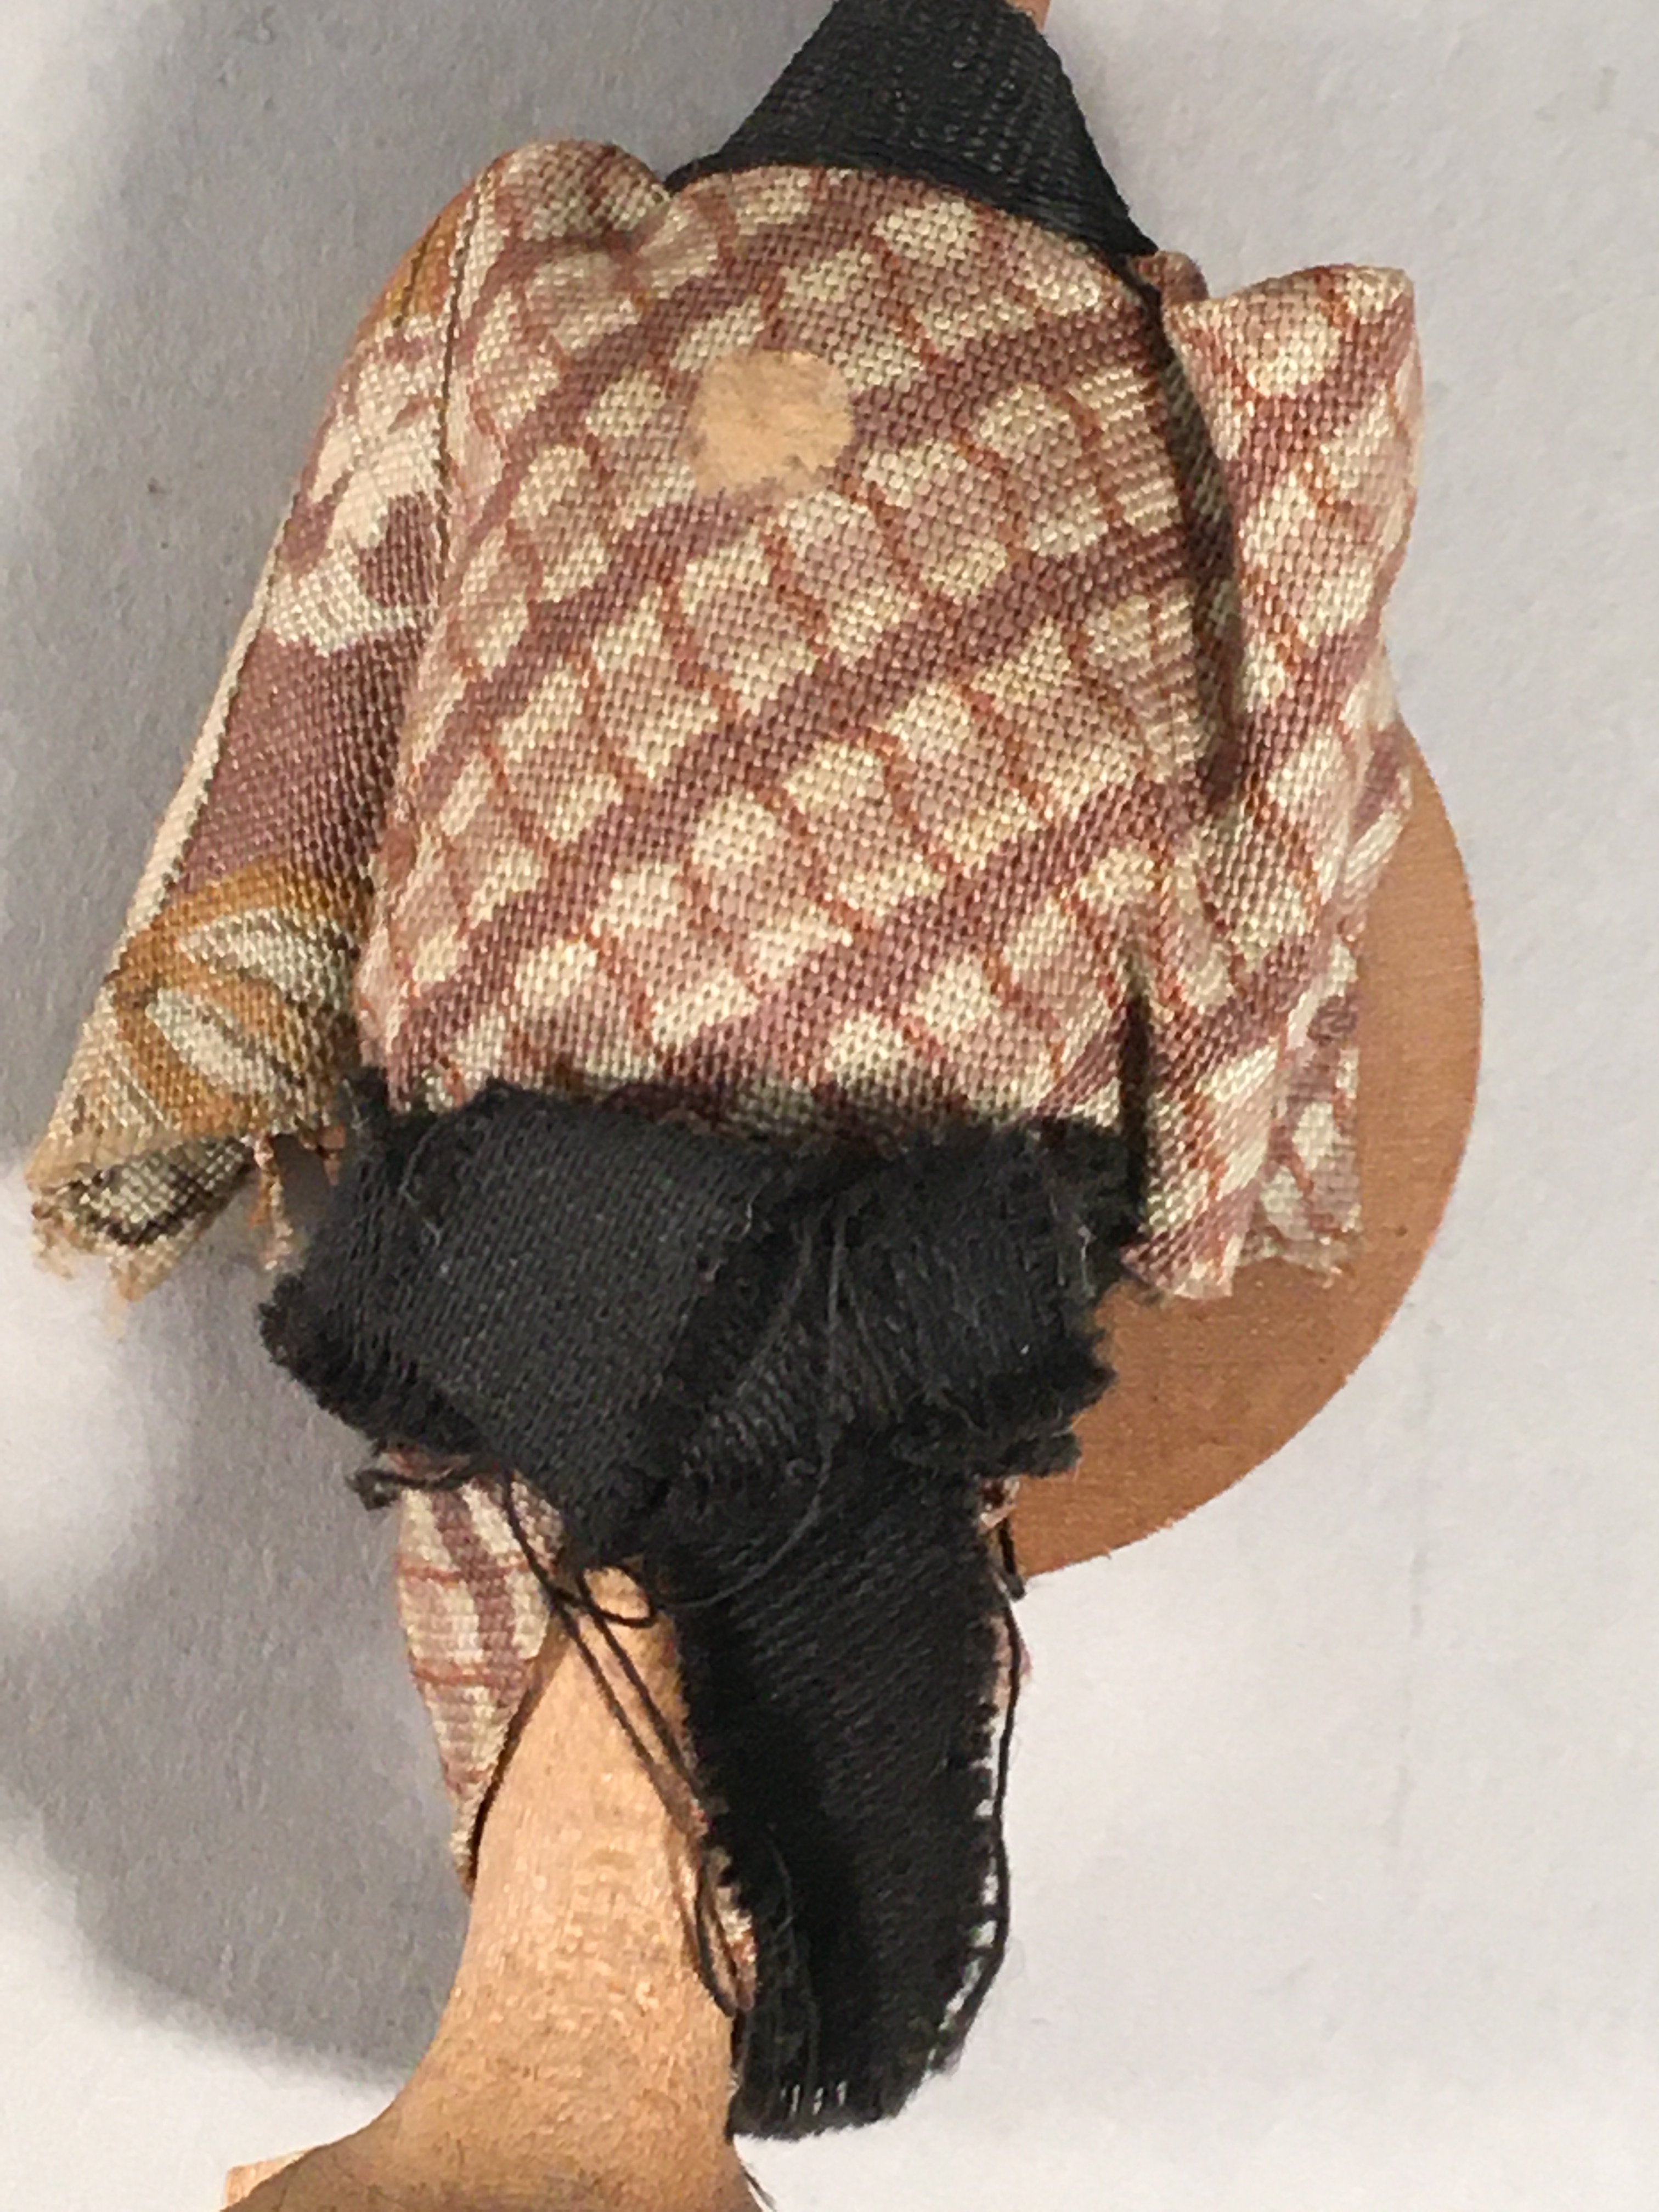 Japanese Kokeshi Doll Vtg Wooden Figurine Wobbly Head Shade Man Kimono KF469